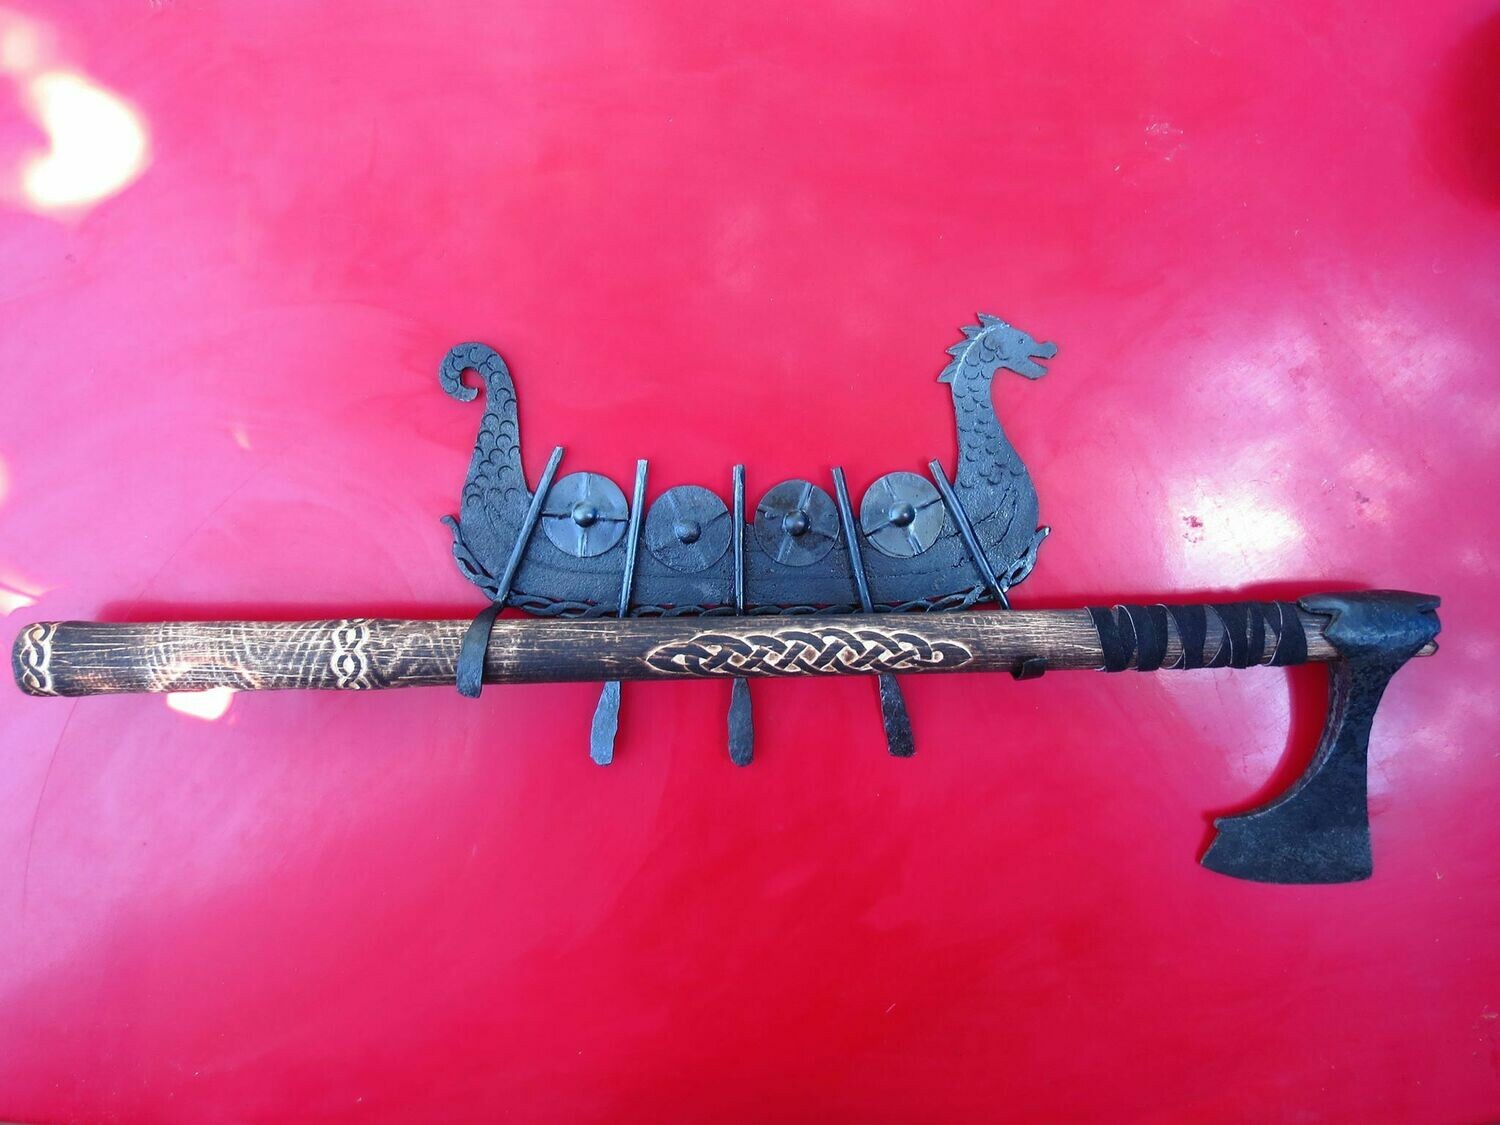 Viking Axe Drakkar / Langskip Wall Mount Holder, Hand-Forged Ironwork